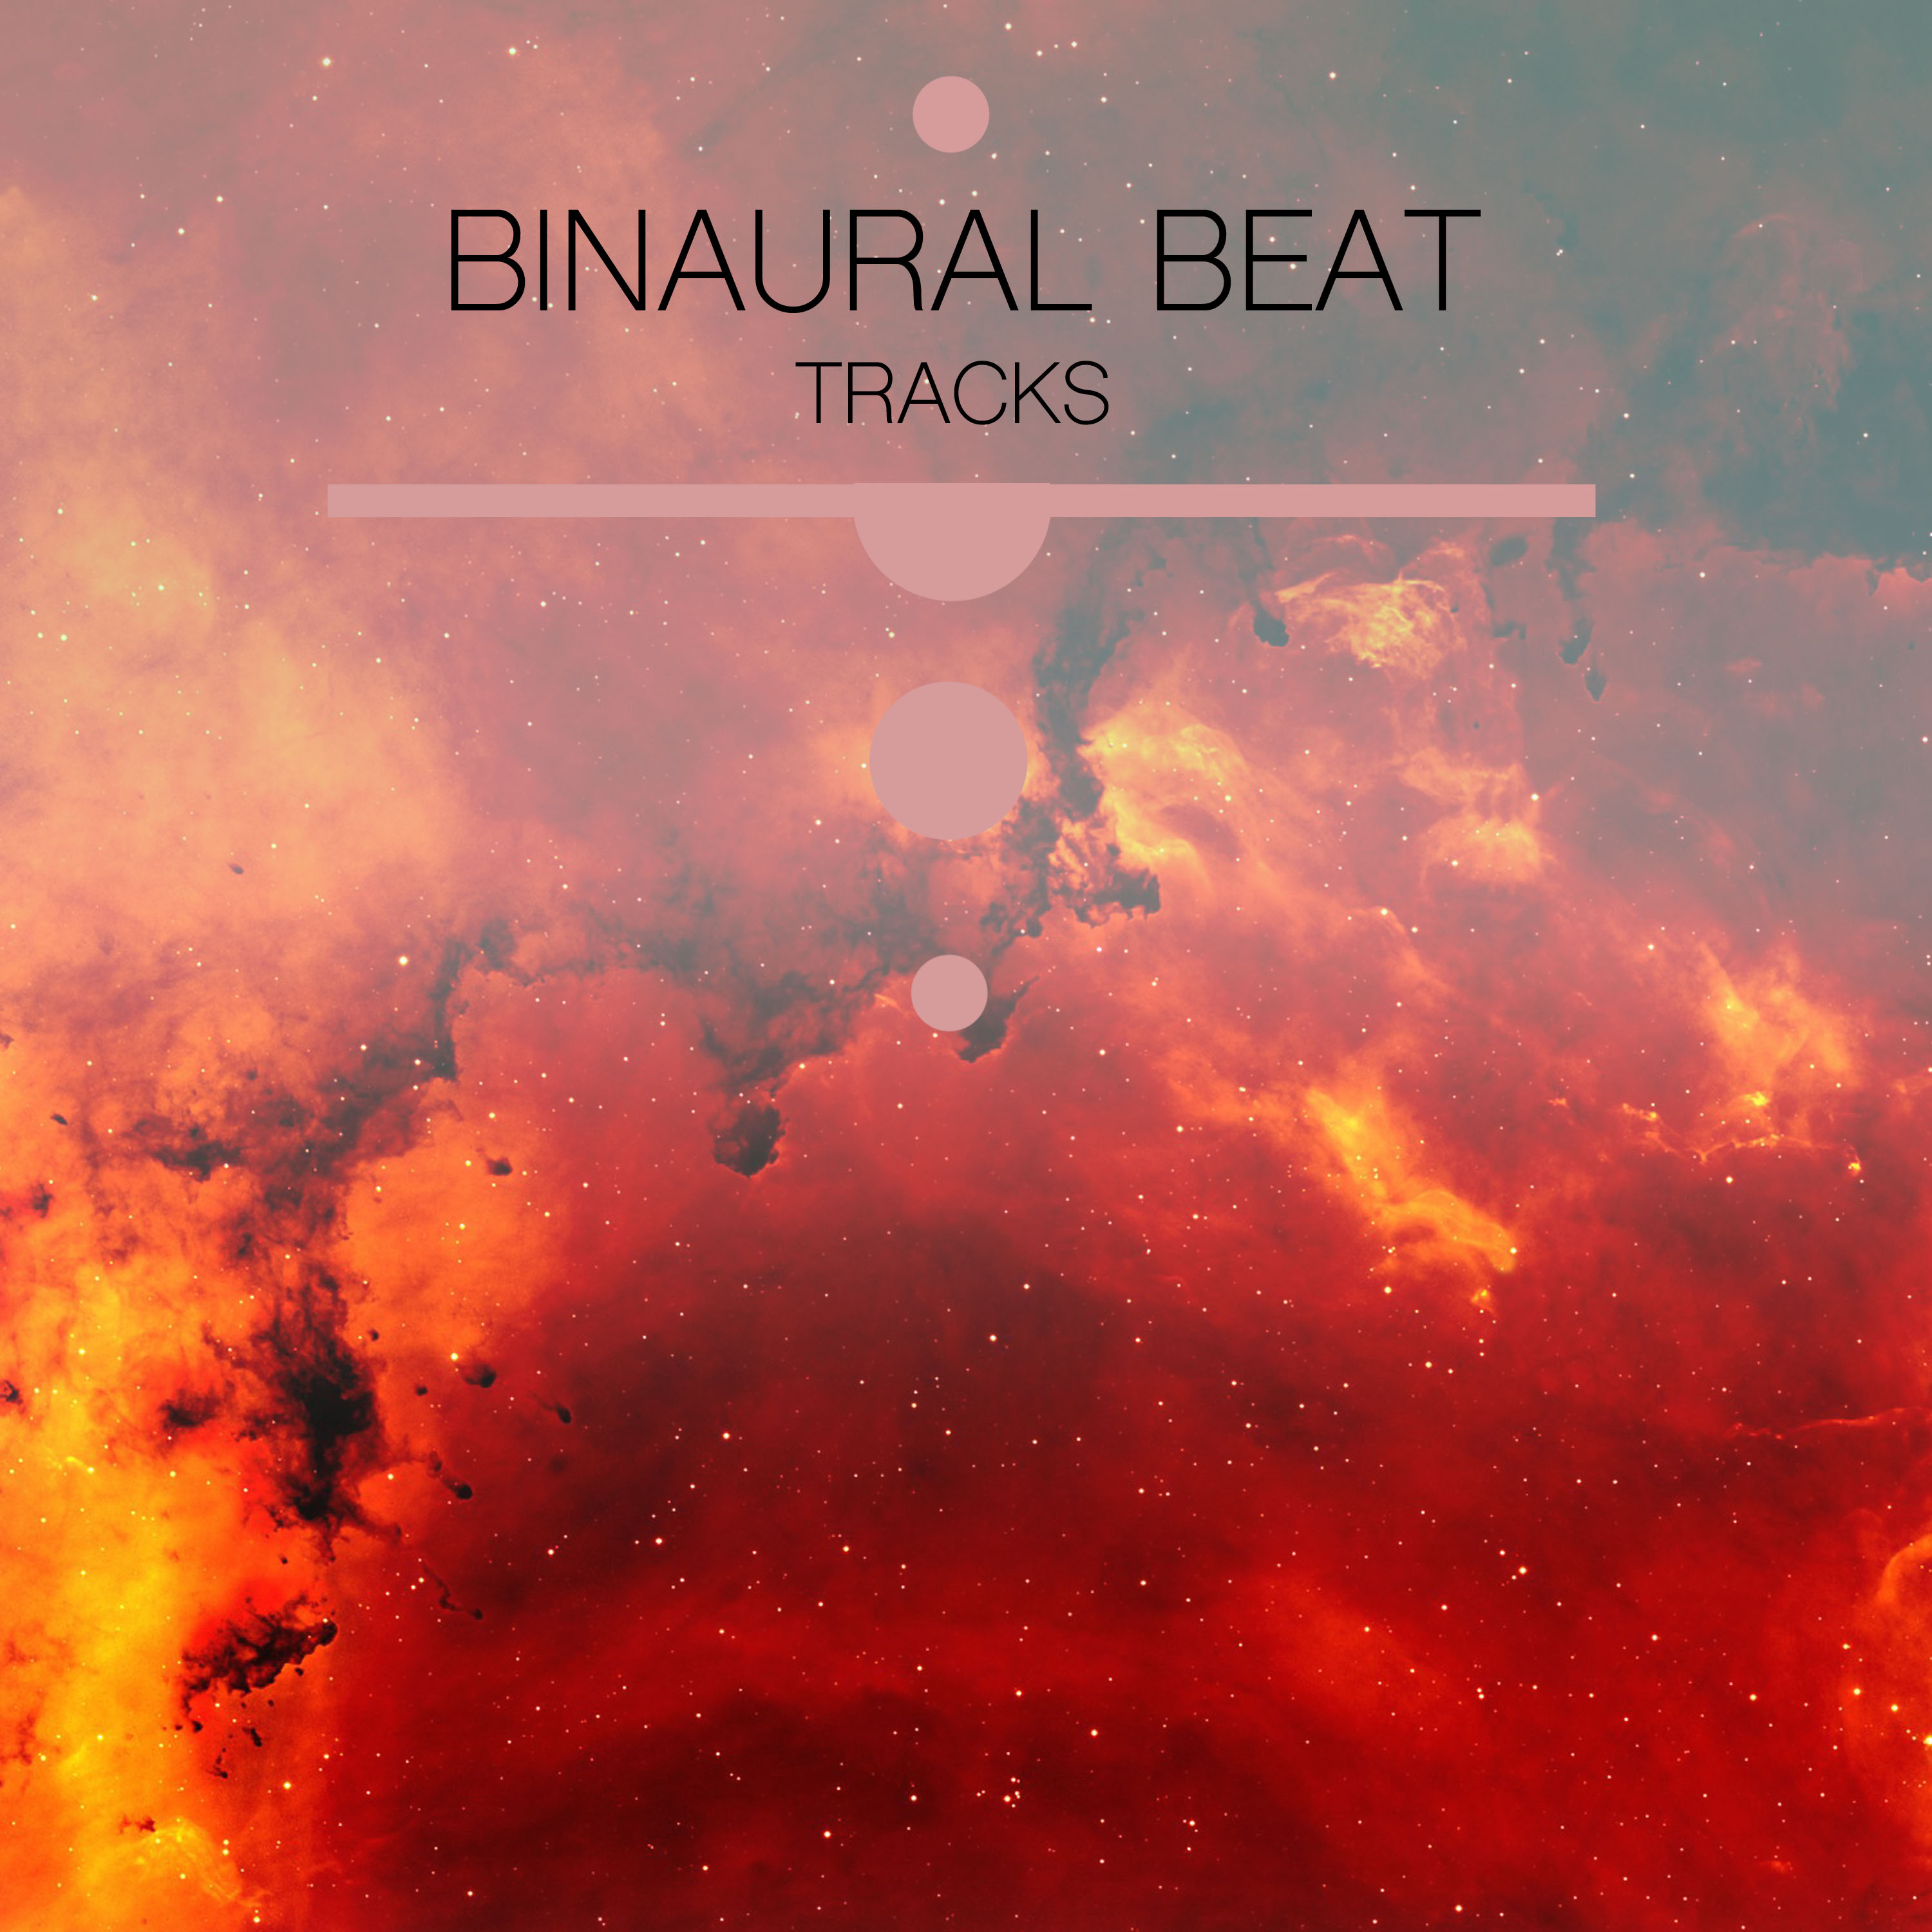 12 Binaural Beats Tracks